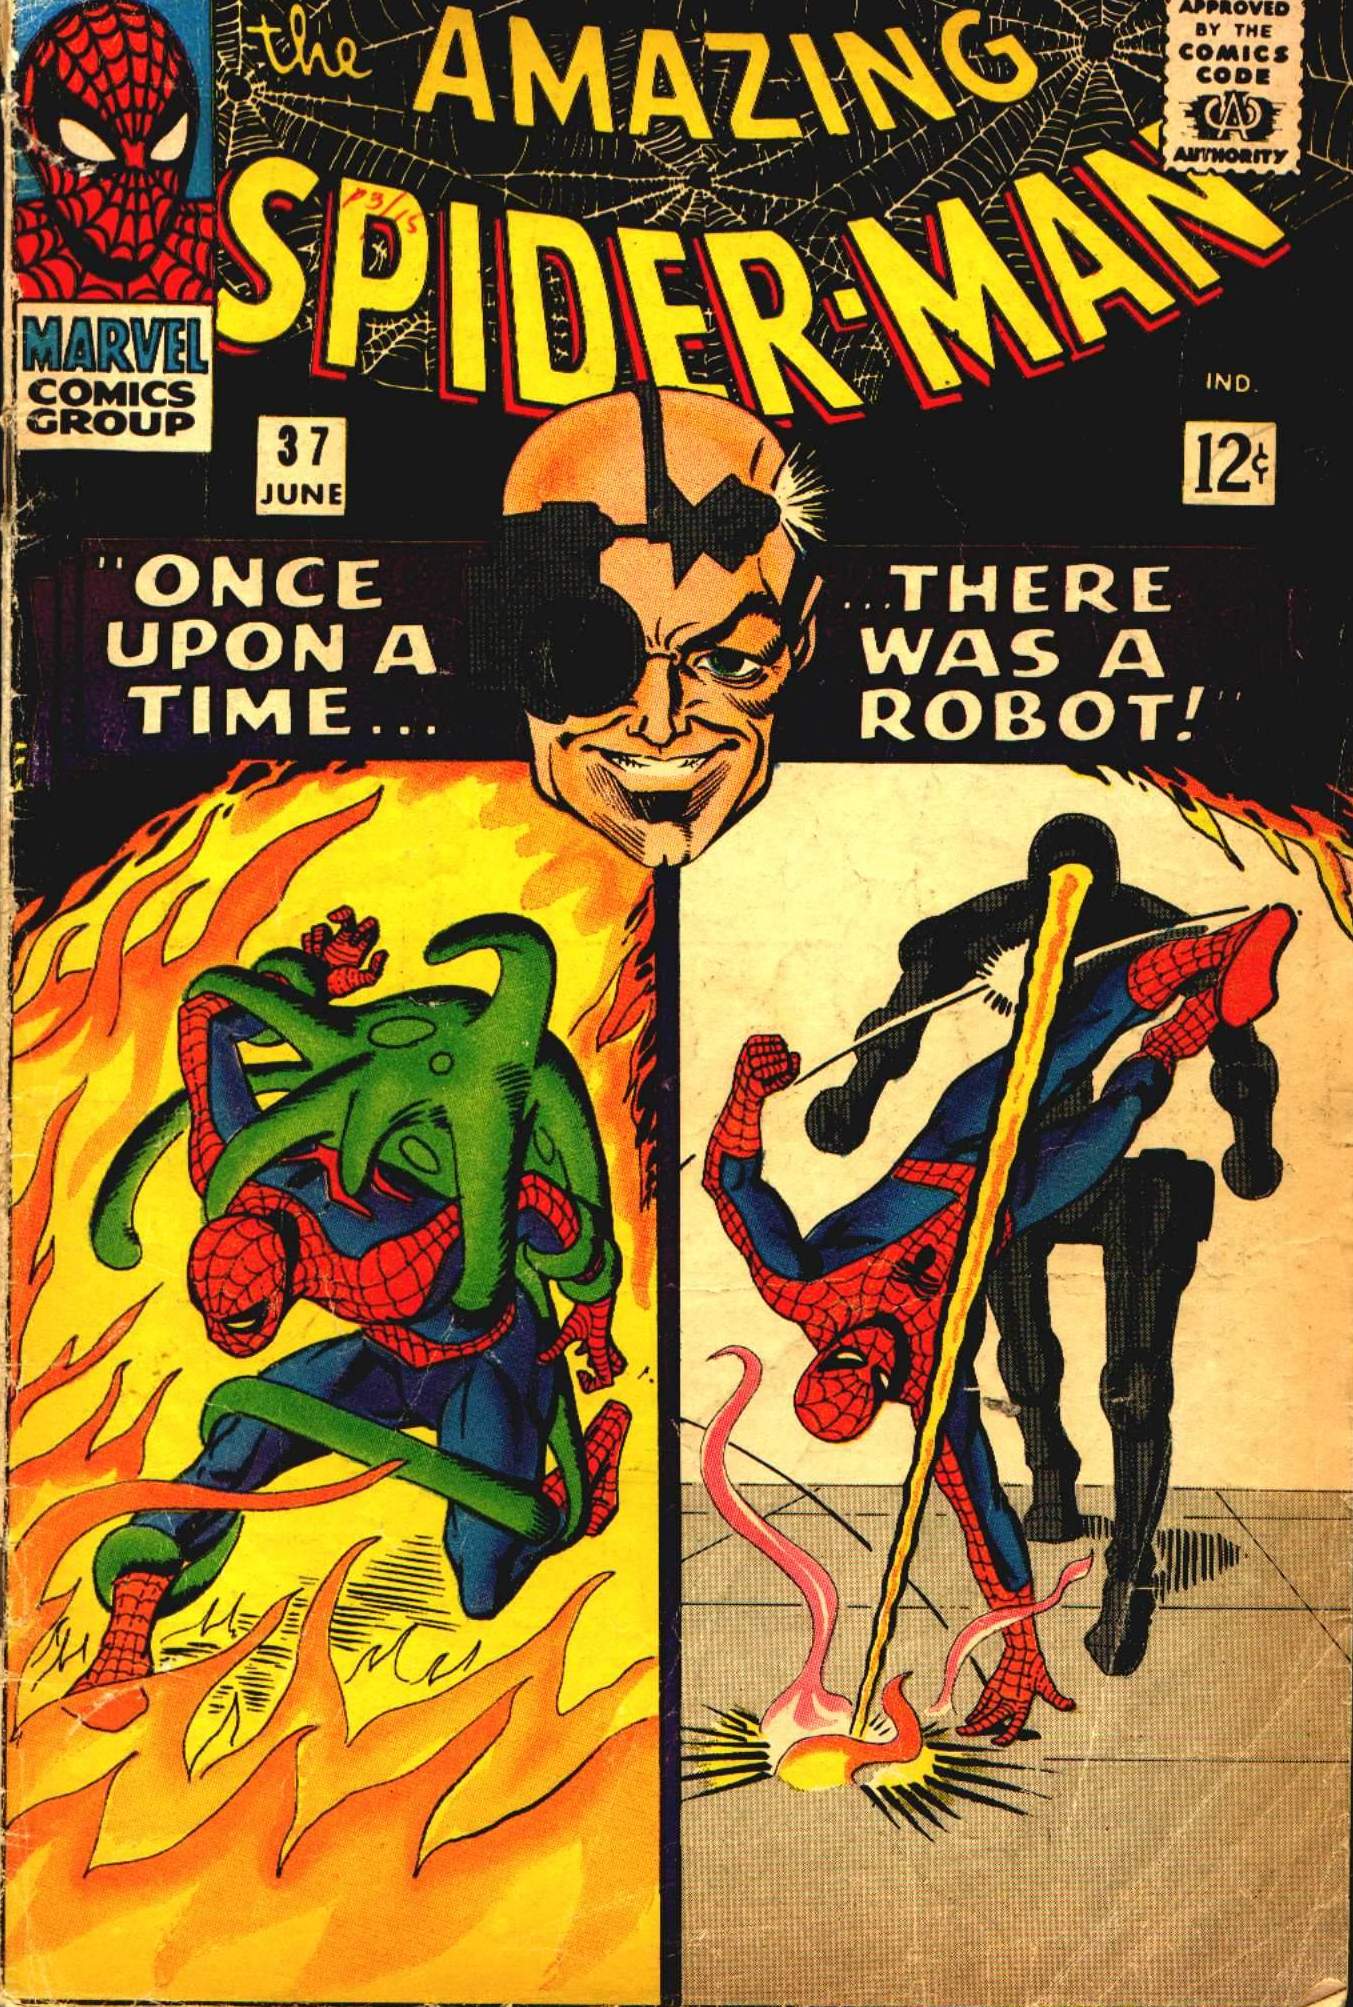 Amazing Spider-Man Vol. 1 #37